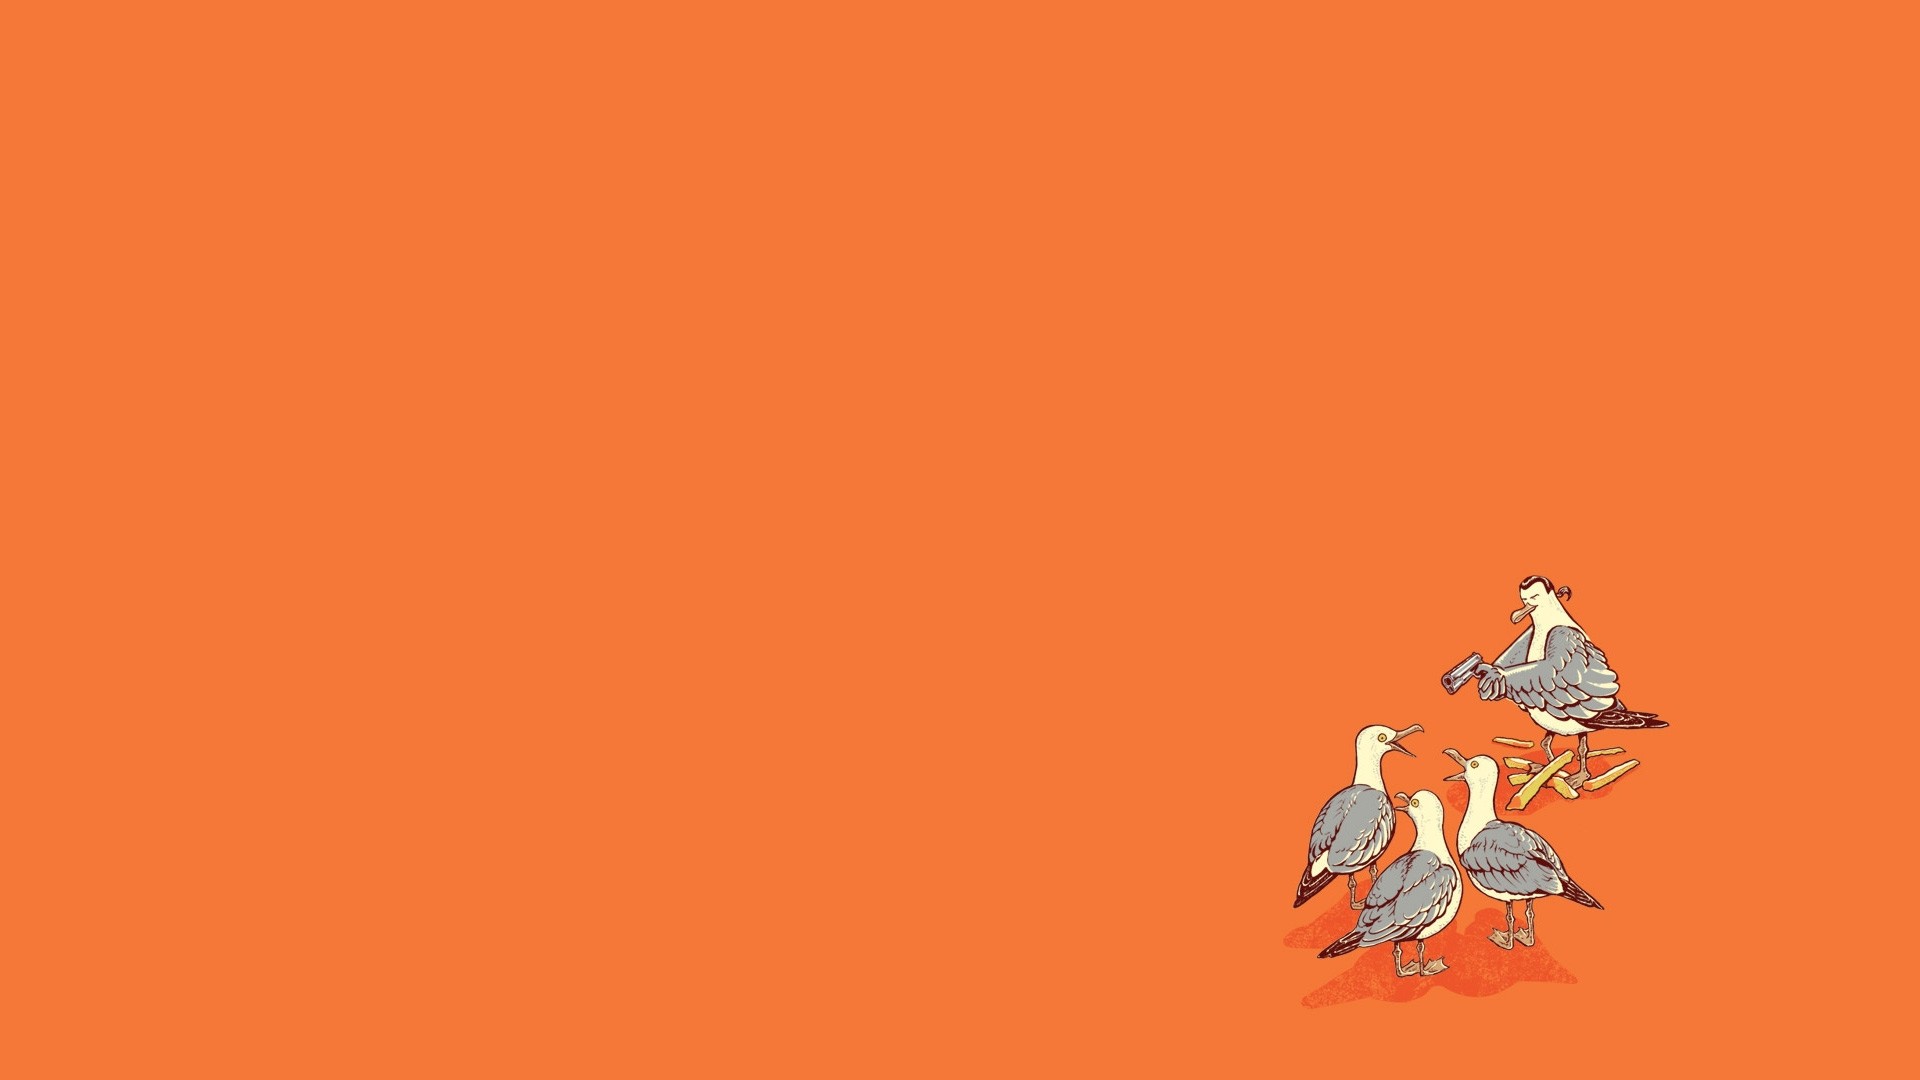 Steven, seagulls - desktop wallpaper